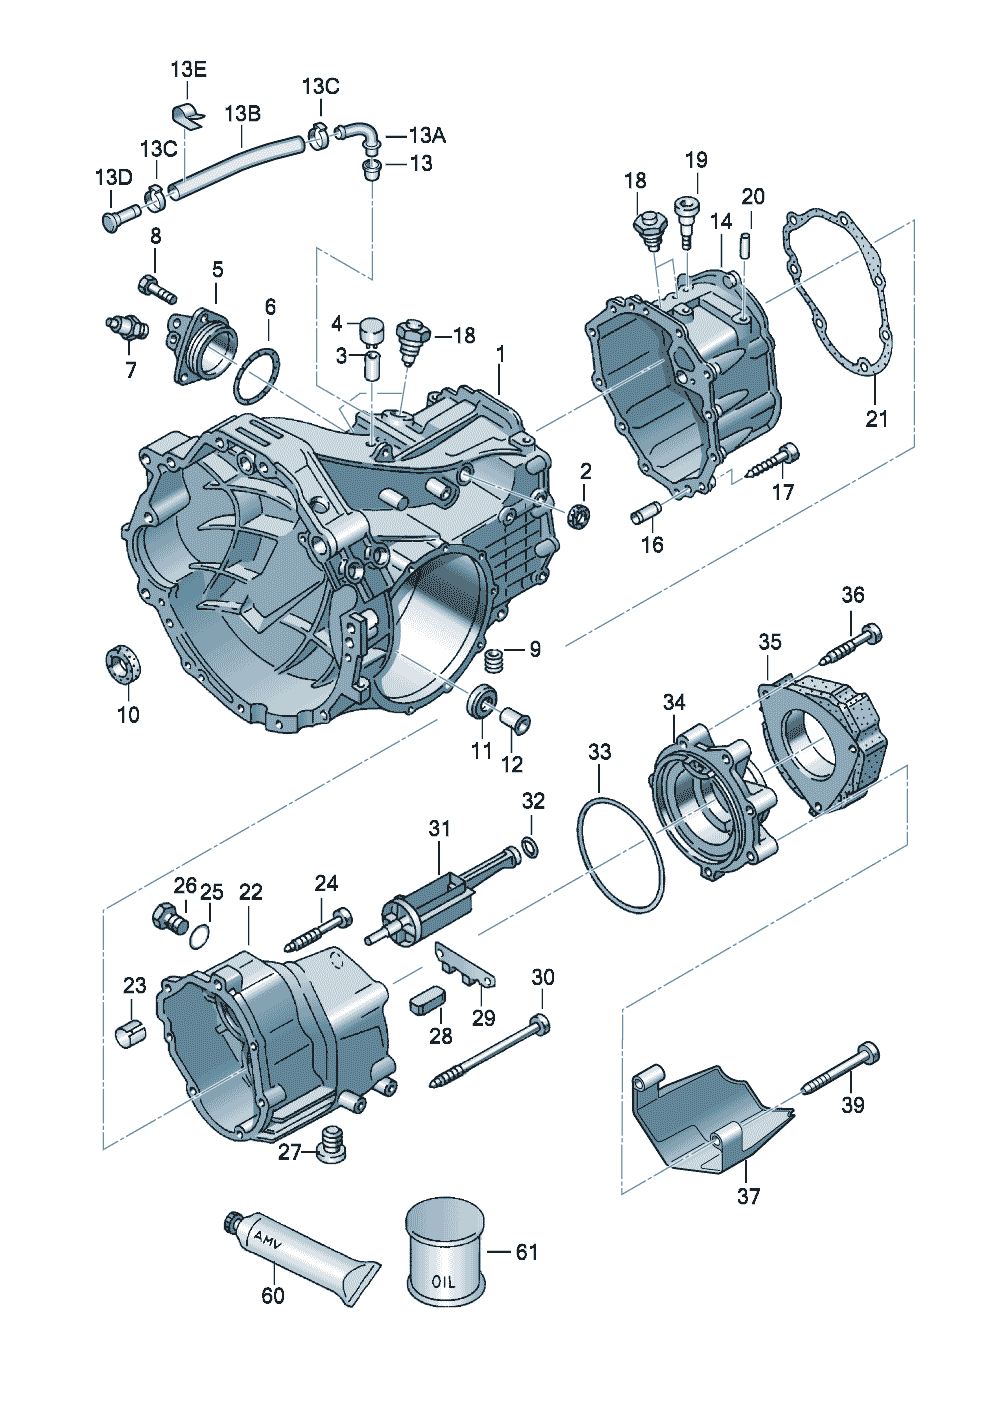 Getriebegehäuse6-Gang-Schaltgetriebefür Allradantrieb 1,8-3,0Ltr. - Audi A4/Avant - a4